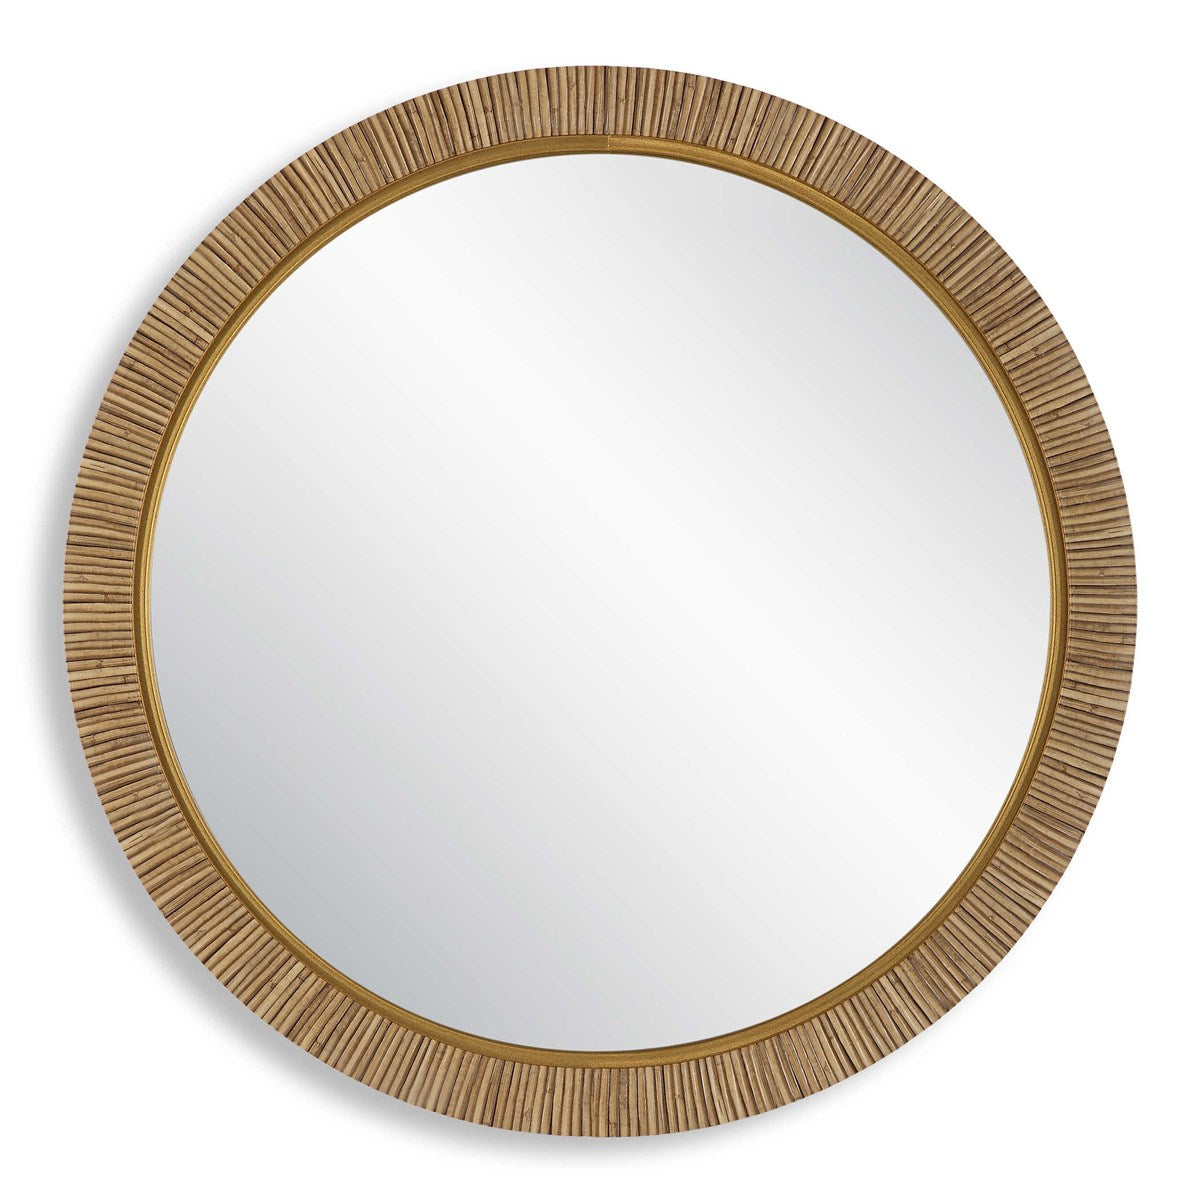 30" Round Mirror